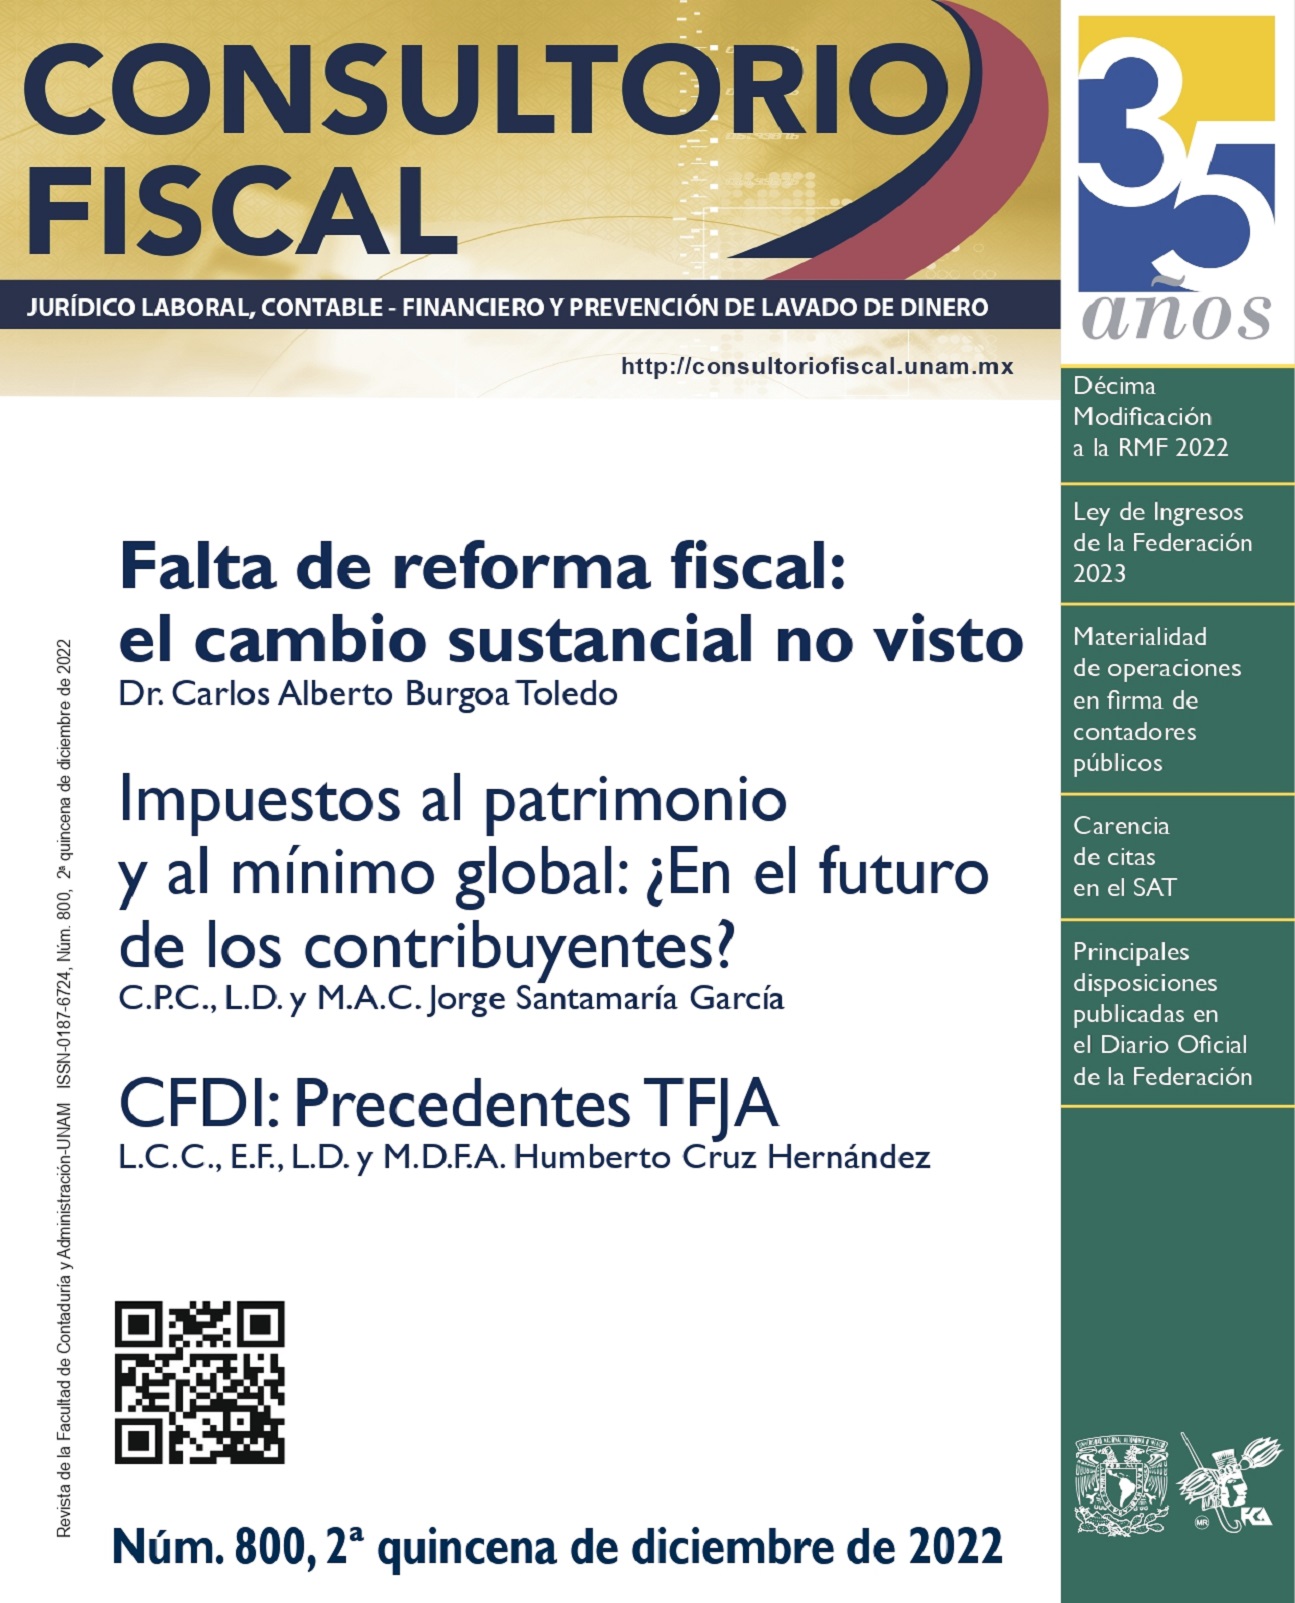 Falta de reforma fiscal: el cambio sustancial no visto